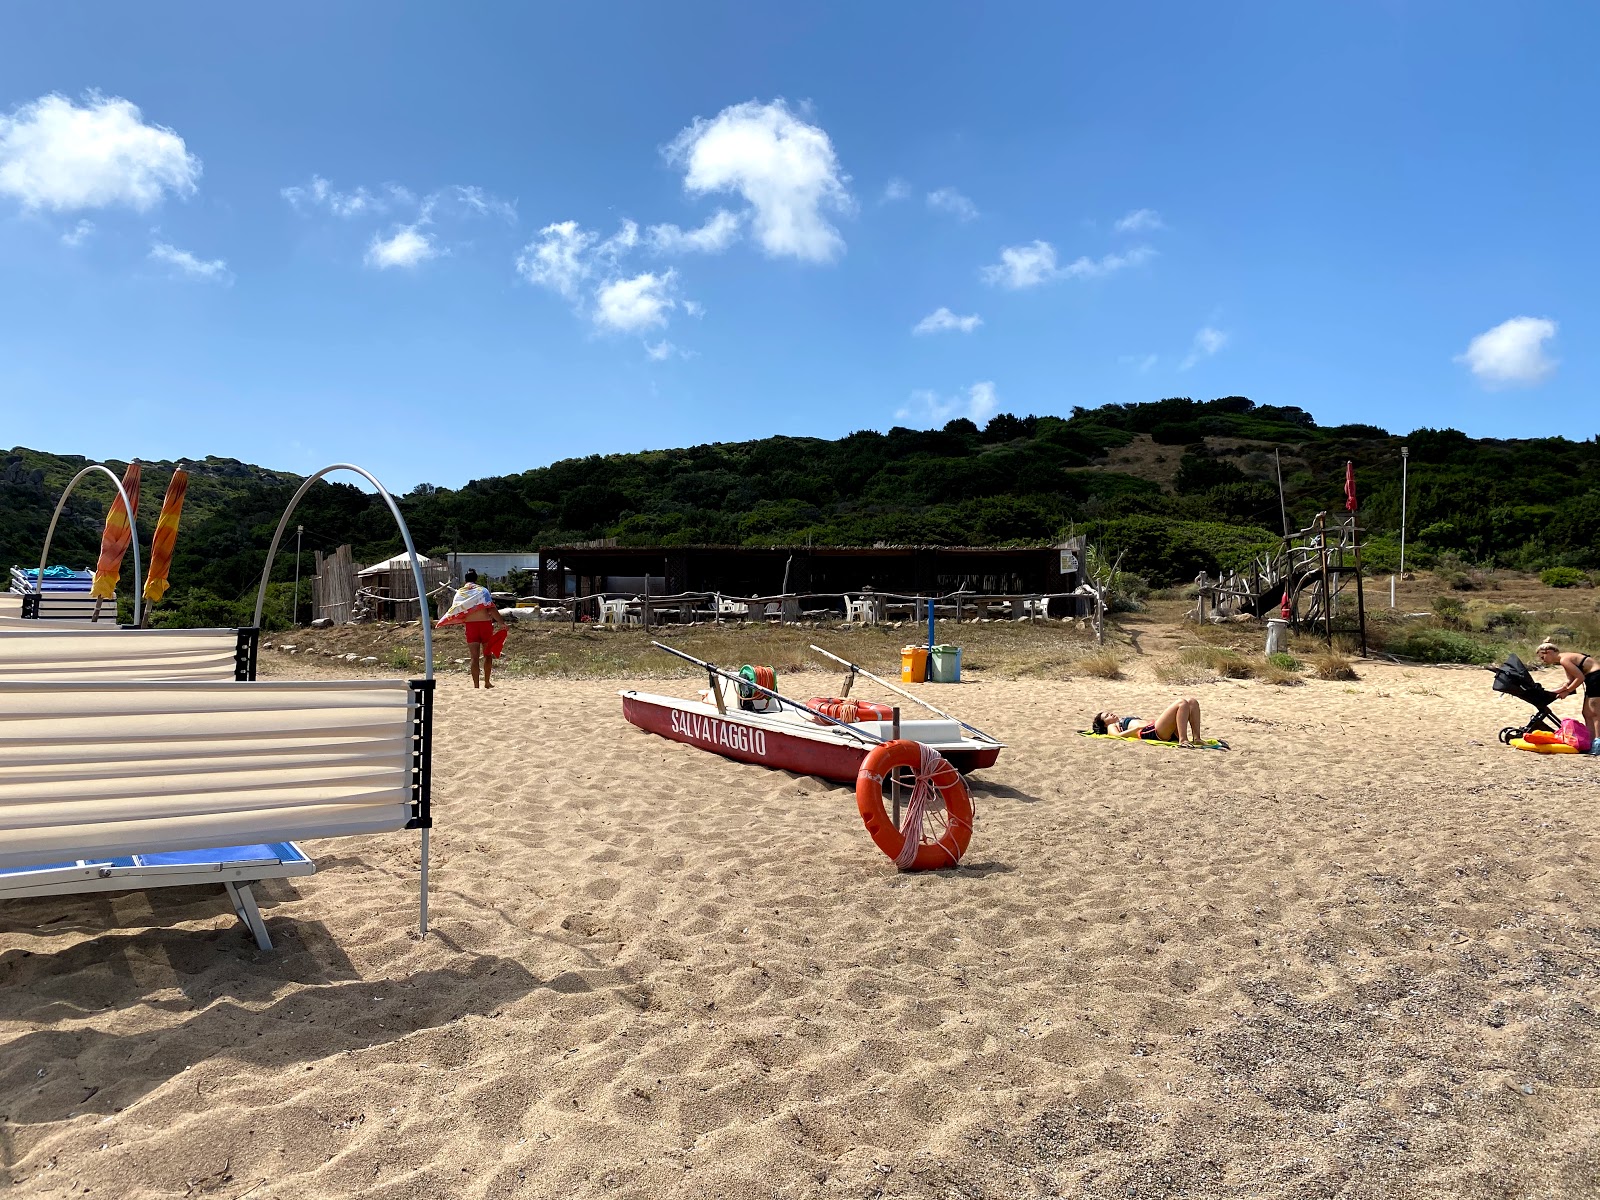 Photo de Spiaggia Porto Quadro situé dans une zone naturelle